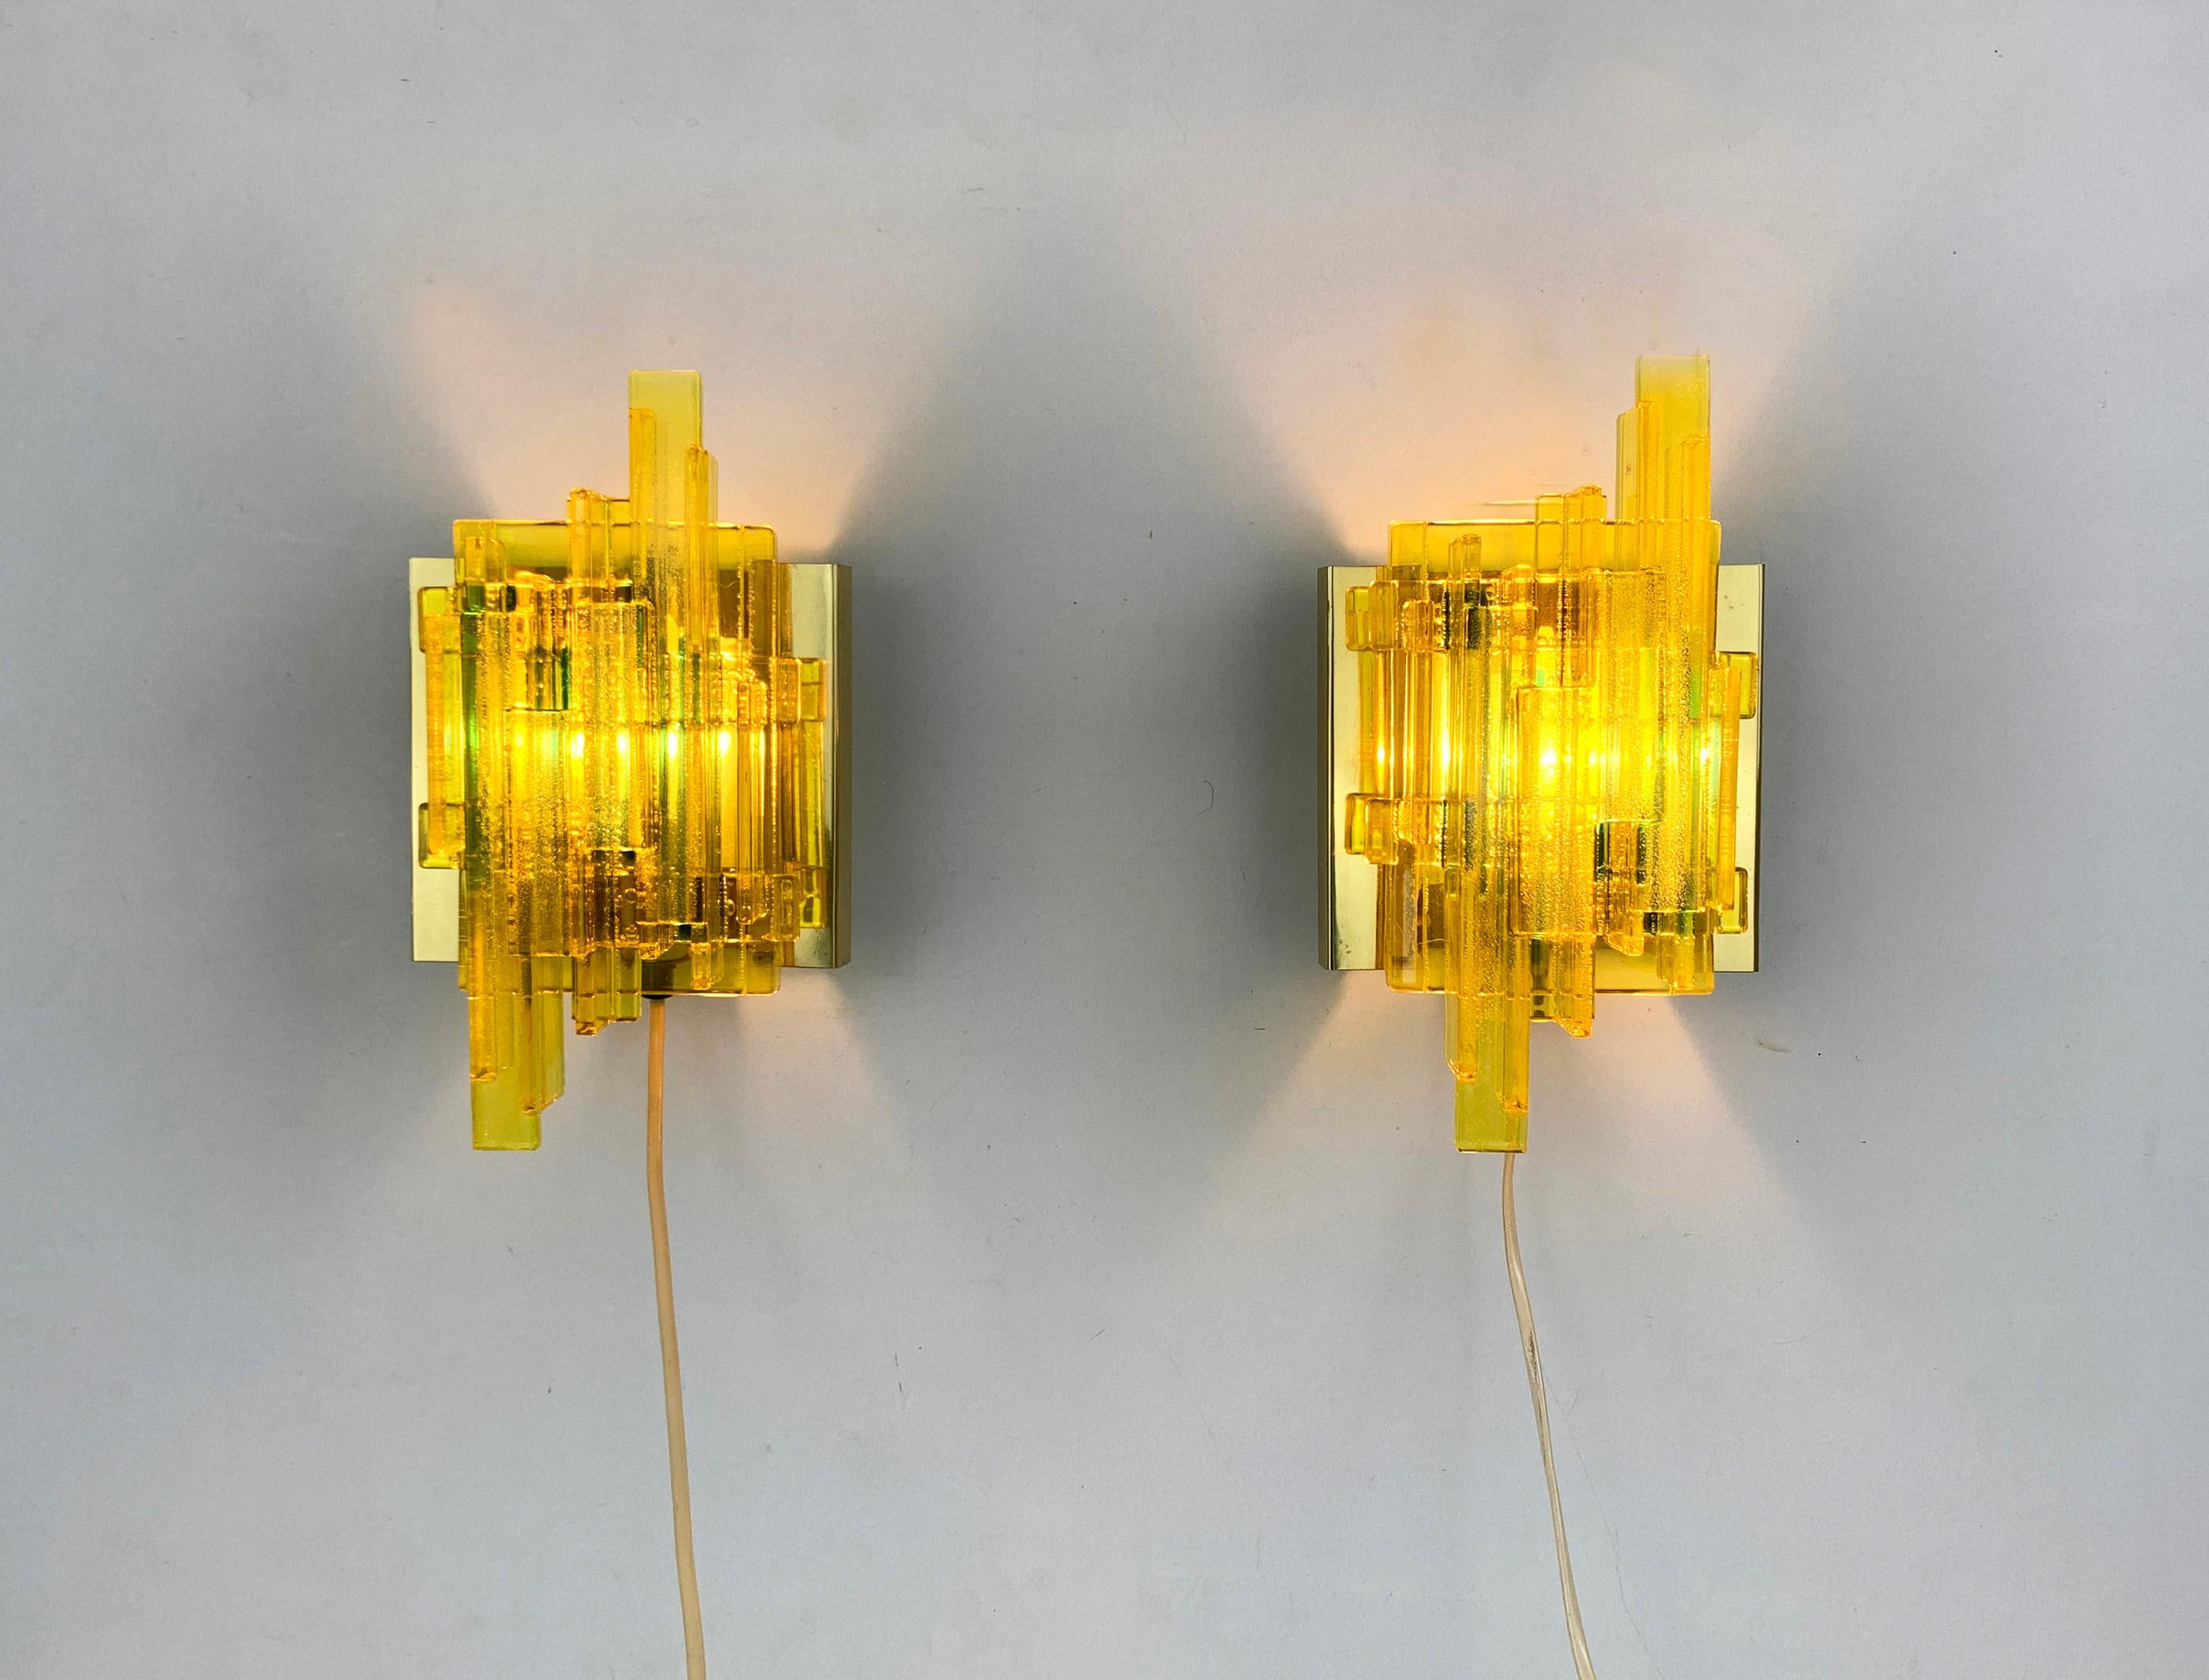 Diese Wandleuchten wurden von Claus Bolby entworfen und von seinem eigenen Unternehmen Cebo Industri in Dänemark hergestellt. 

Die Lampen bestehen aus gelben Acrylblöcken/-stäben, die unter Einbeziehung von Glühbirnen zusammengeschmolzen